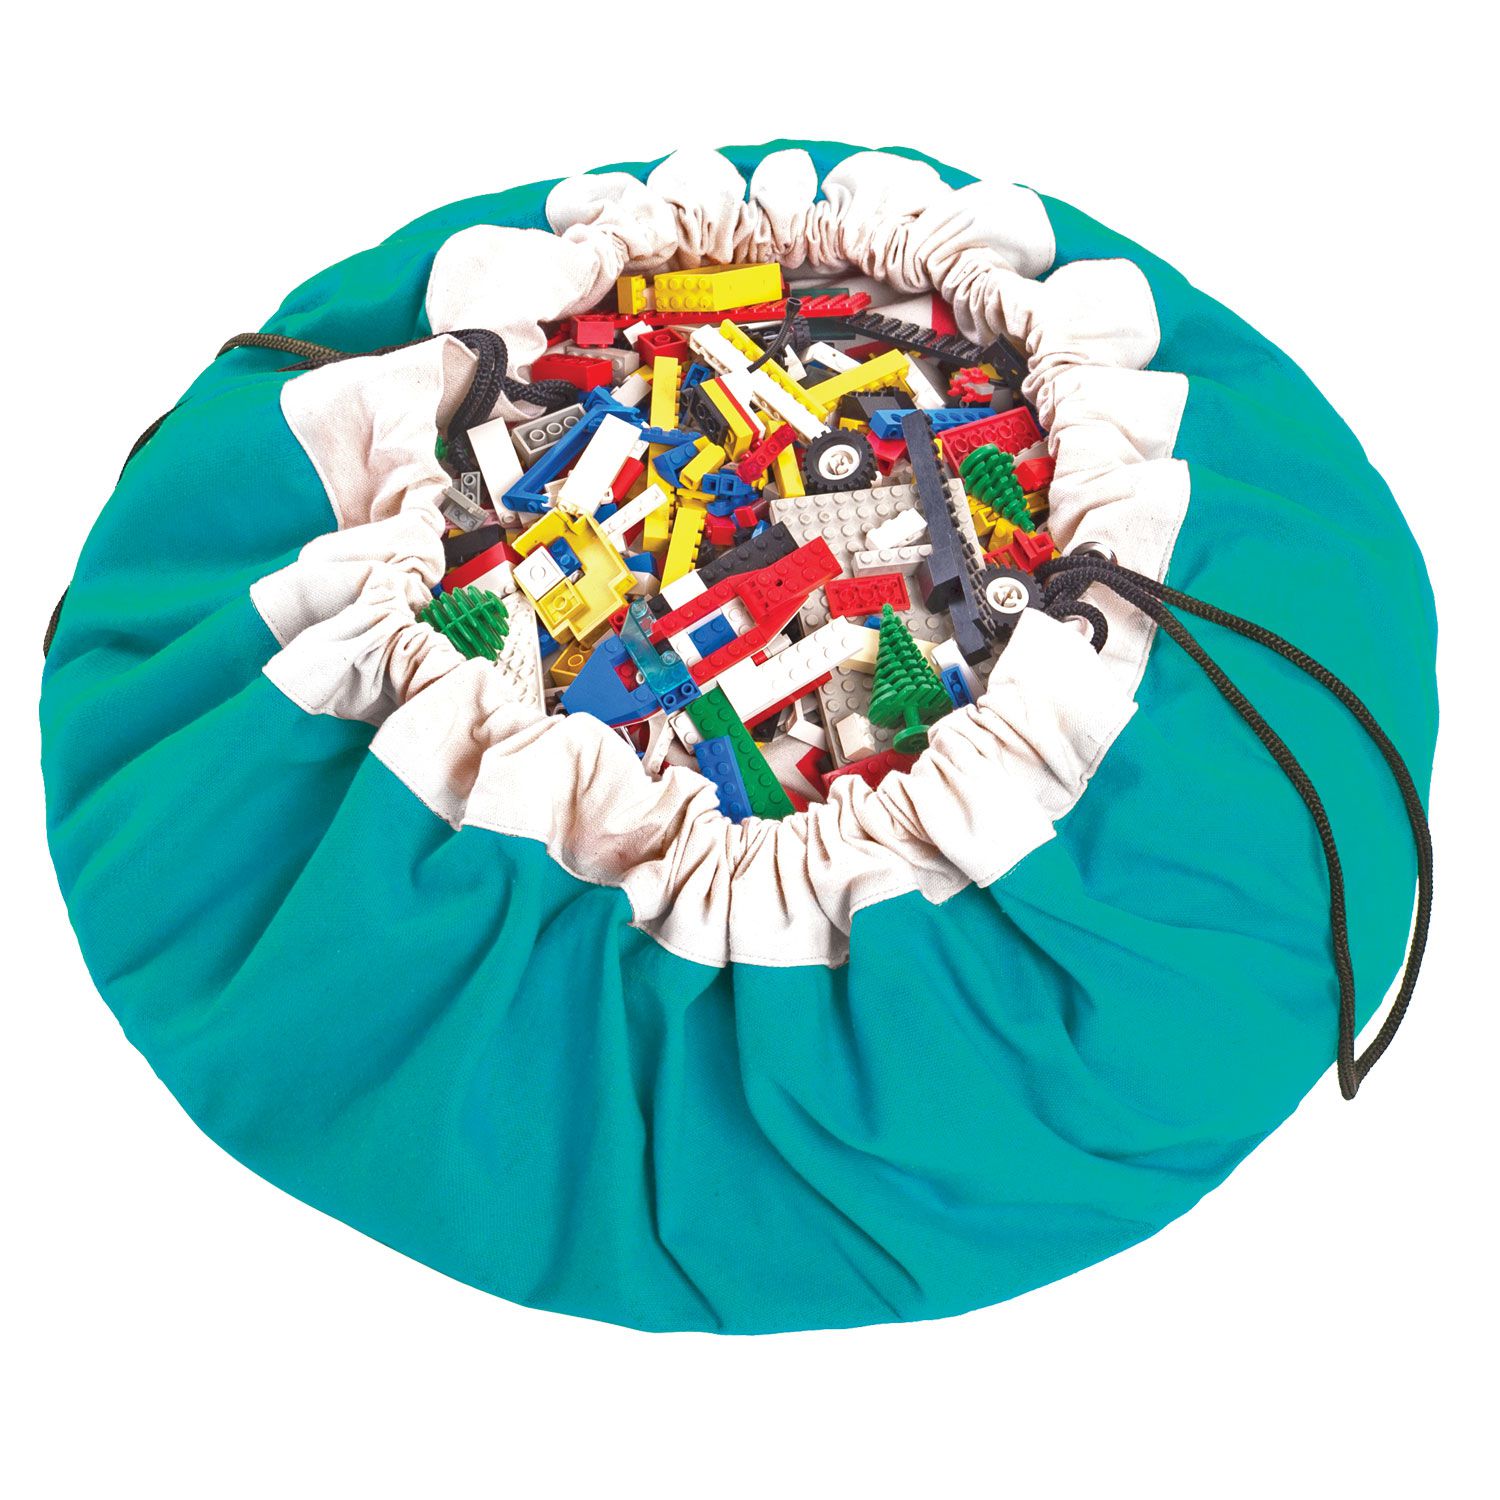 比利時 play & go 玩具整理袋 (經典綠)